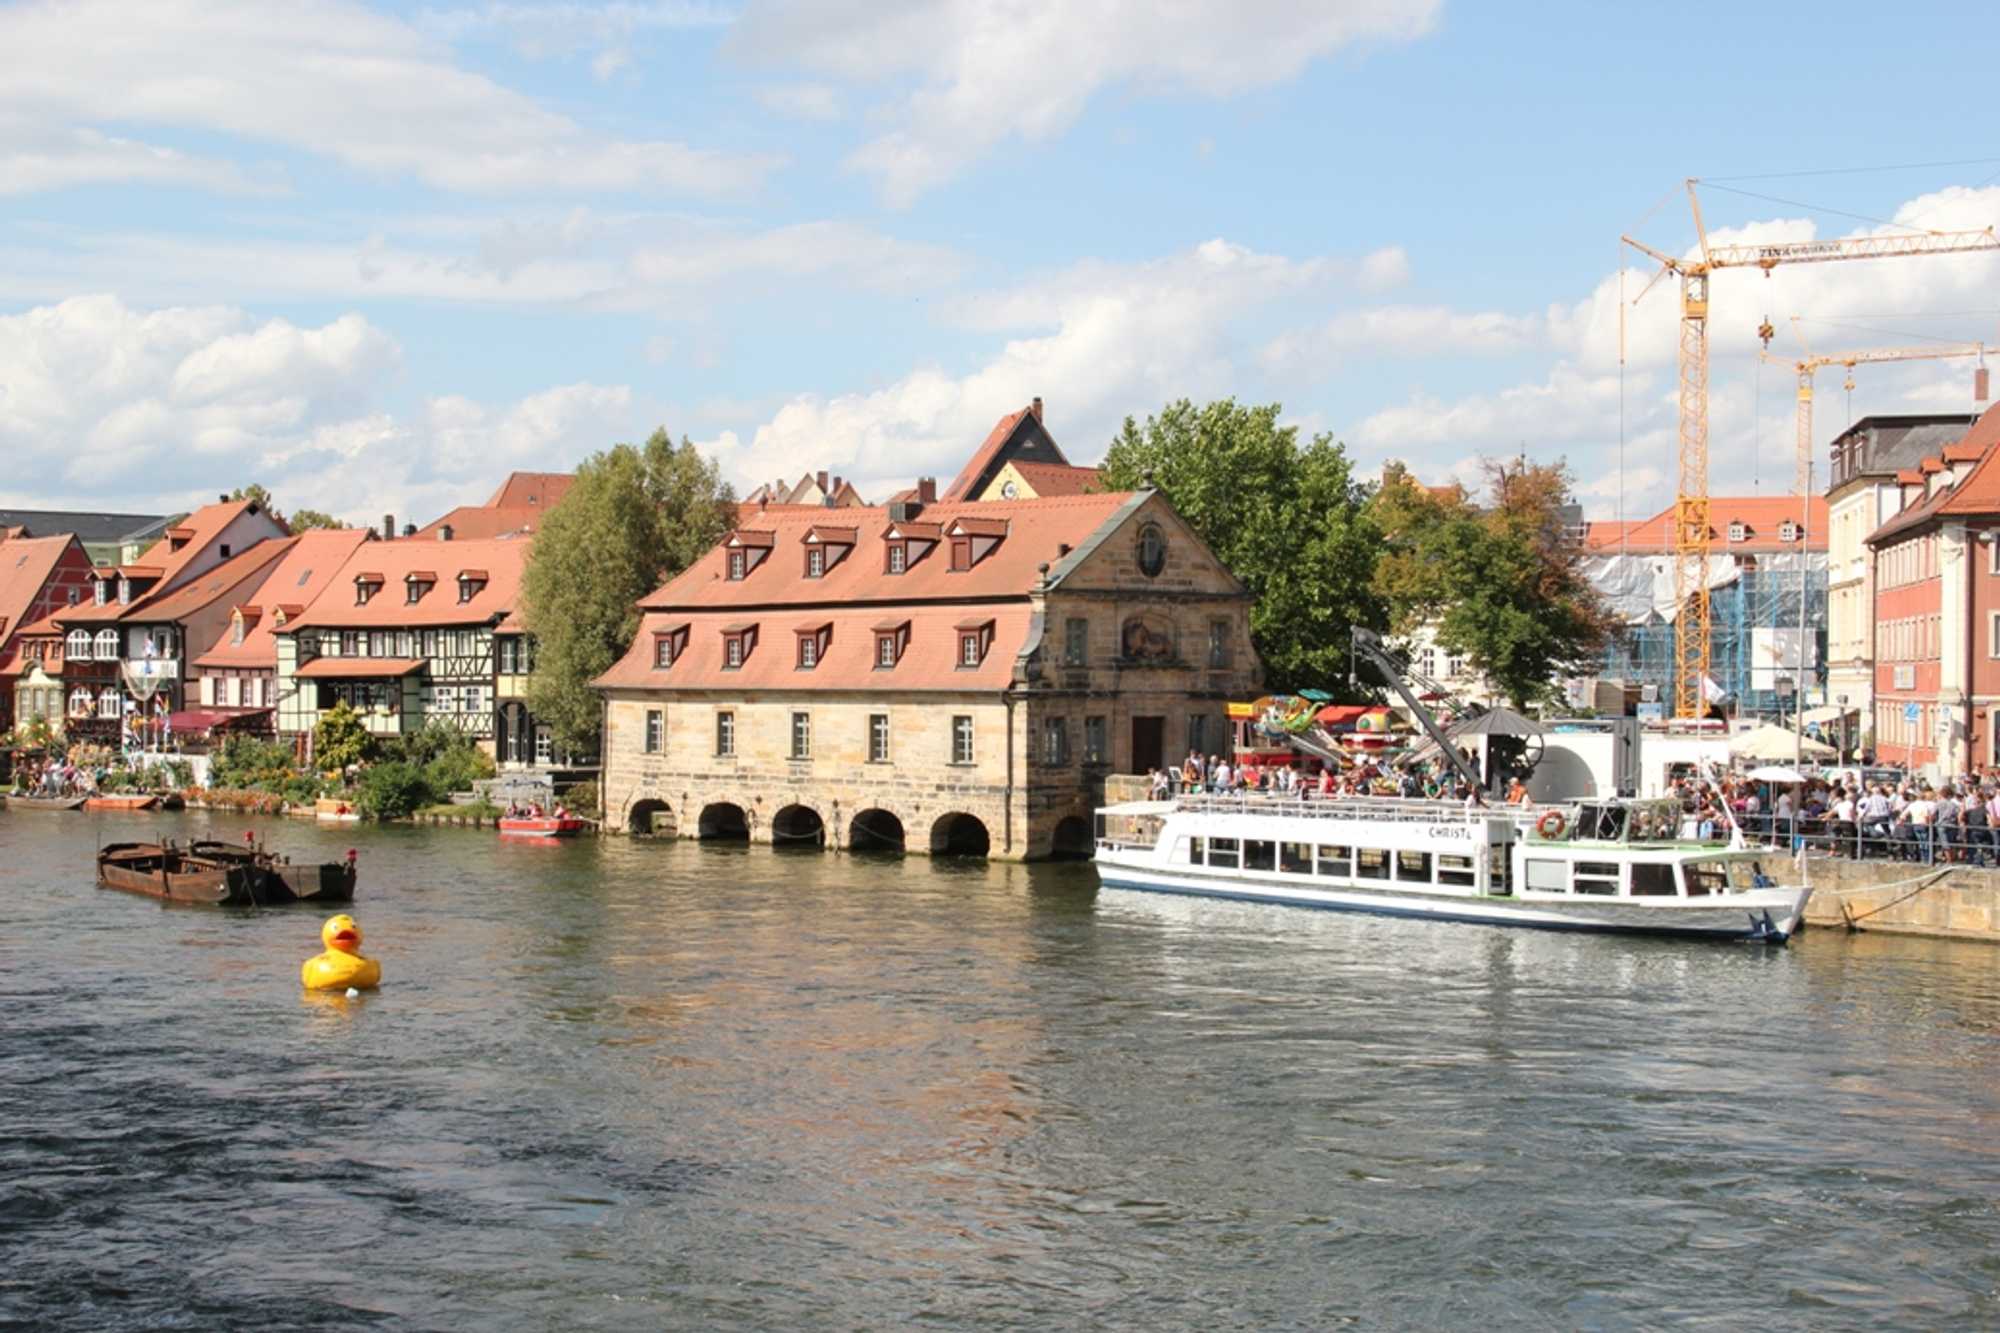 Vom Anleger Kranen, mitten in der Altstadt Bambergs gelegen, beginnen die Schiffahrten über Regnitz und Main-Donau-Kanal, entlang der Altstadt und des Gartenschaugeländes.